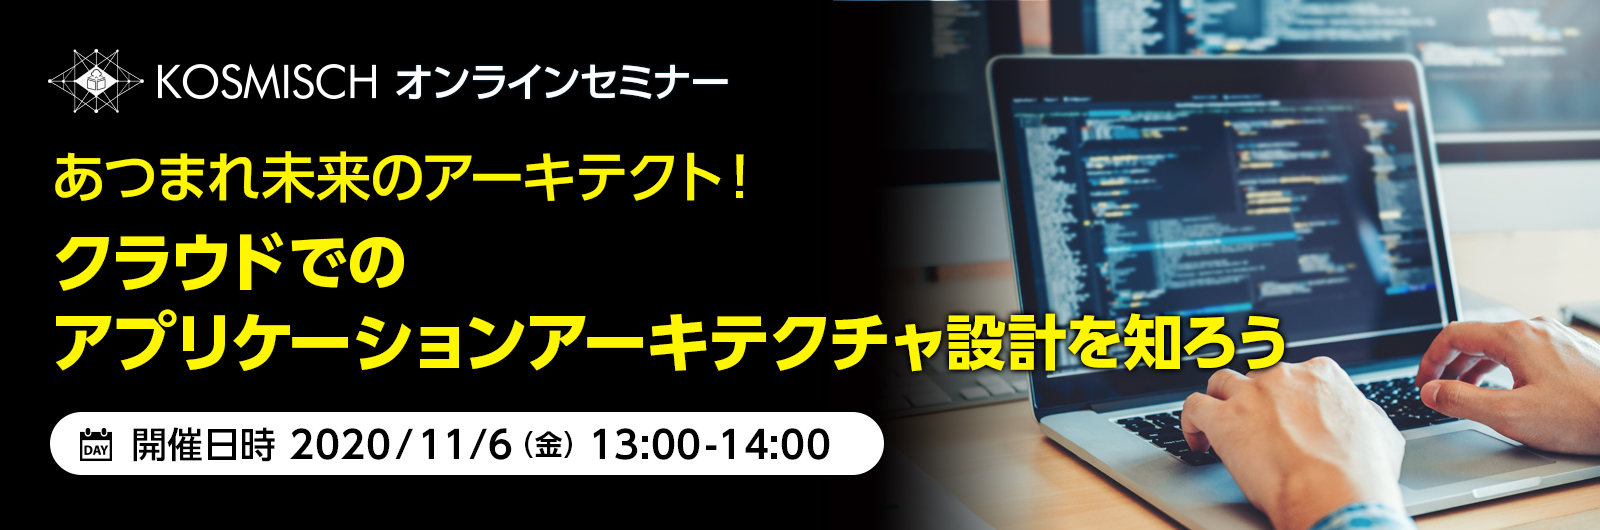 「KOSMISCH全国キャラバン」でクラウドでのアプリケーションアーキテクチャー設計を支援するオンラインセミナーを日本マイクロソフトと共催